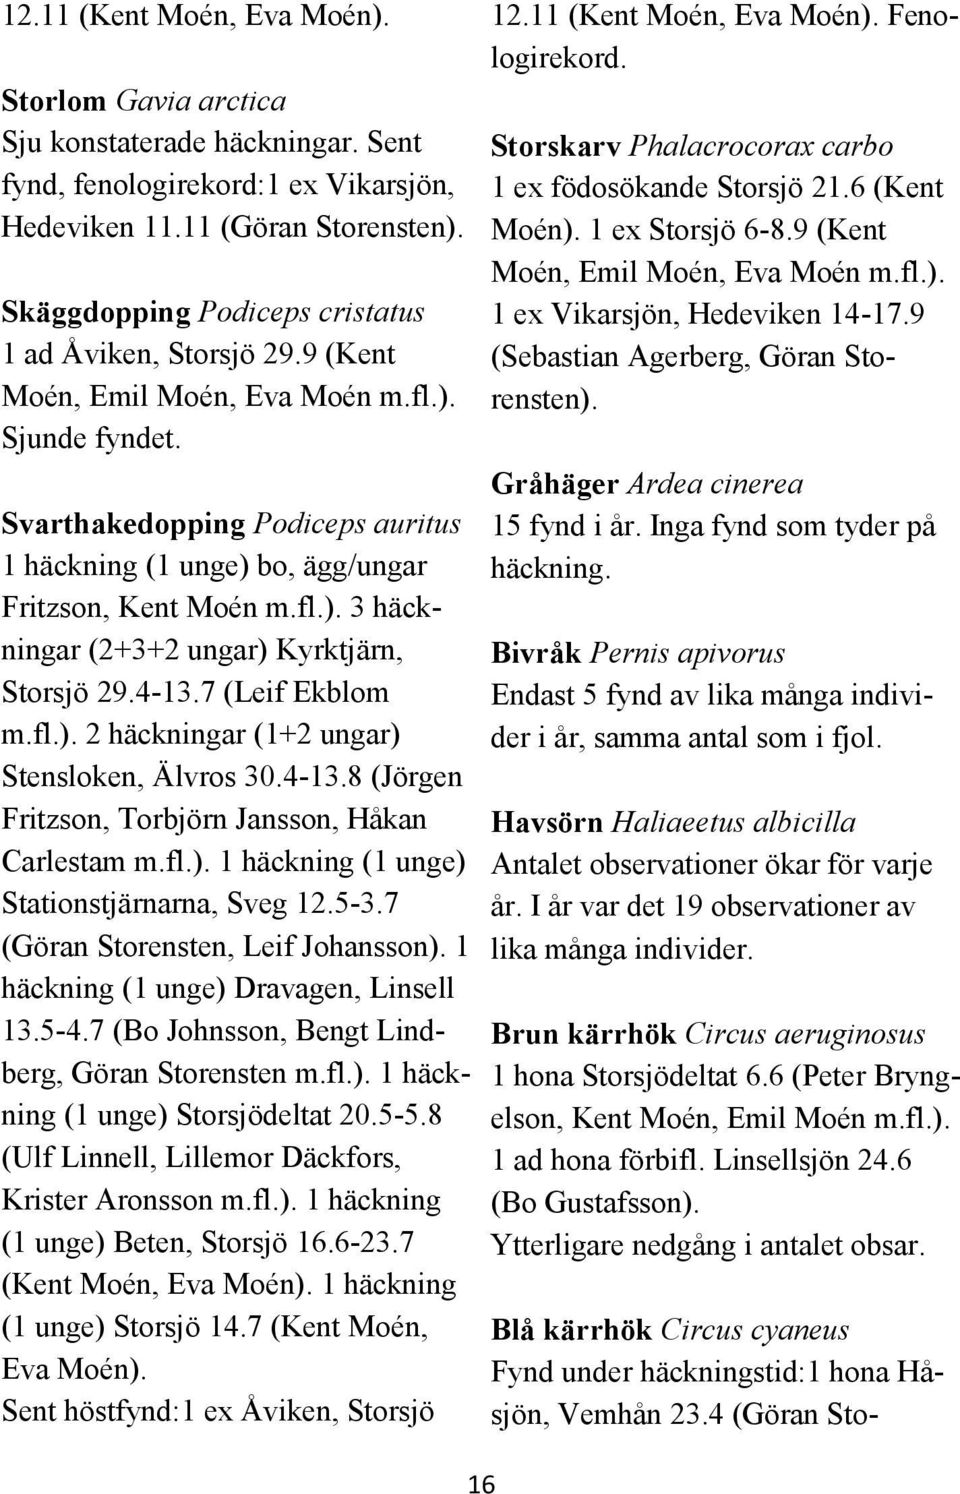 Svarthakedopping Podiceps auritus 1 häckning (1 unge) bo, ägg/ungar Fritzson, Kent Moén m.fl.). 3 häckningar (2+3+2 ungar) Kyrktjärn, Storsjö 29.4-13.7 (Leif Ekblom m.fl.). 2 häckningar (1+2 ungar) Stensloken, Älvros 30.